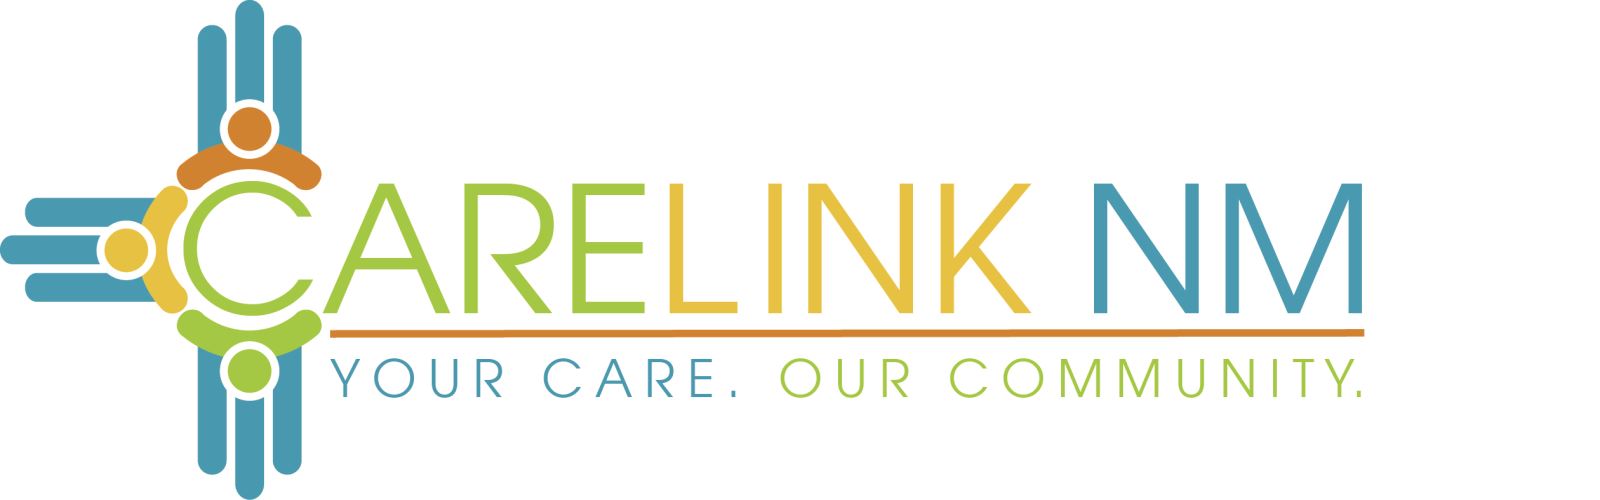 Carelink NM logo